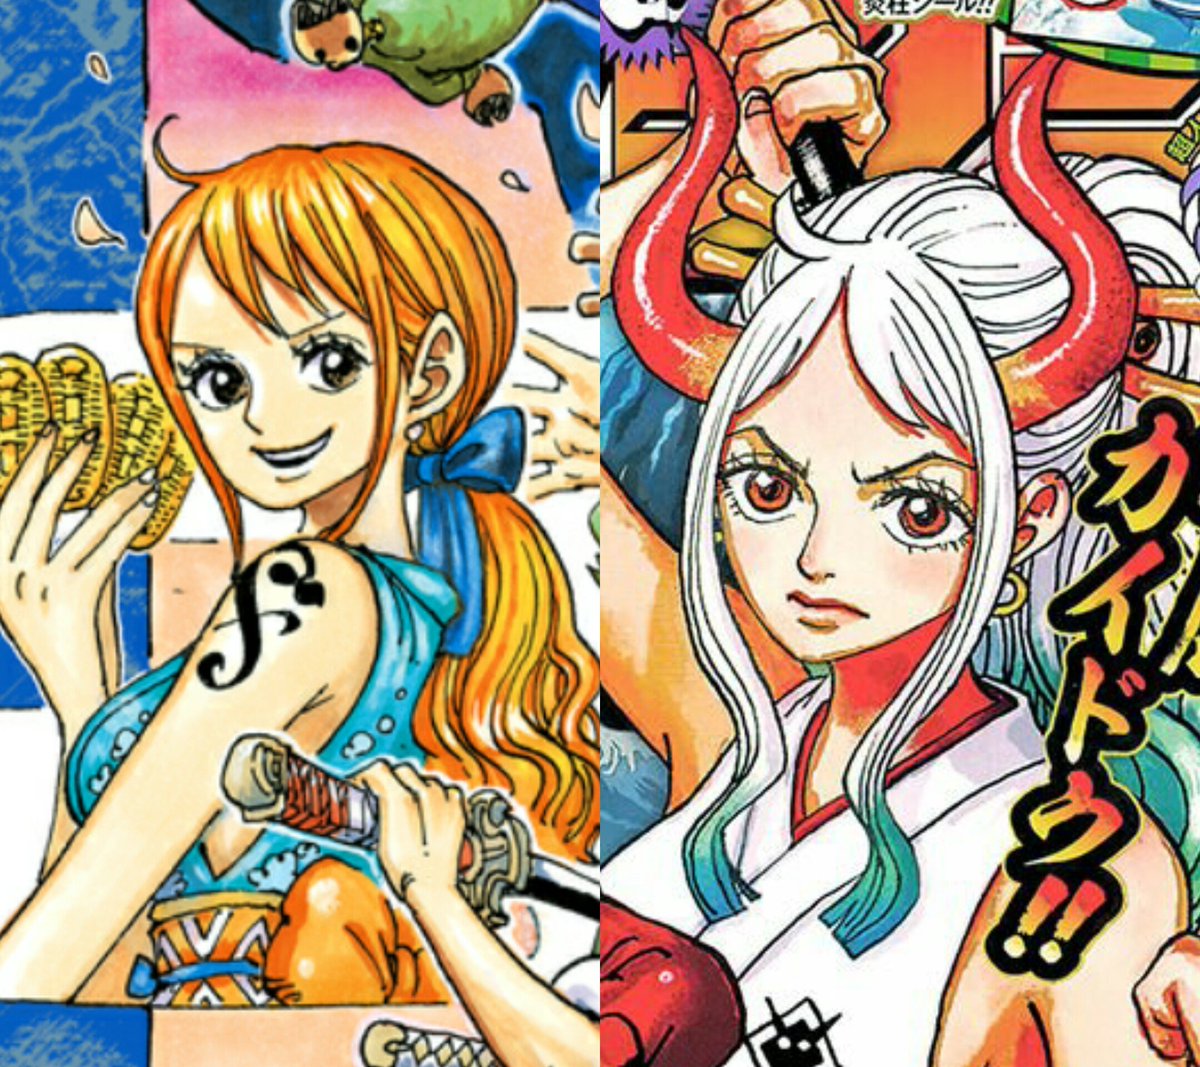 Hãy cùng đắm chìm vào thế giới đầy phiêu lưu và hài hước của One Piece với bức ảnh của Luffy và Nami tuyệt đẹp nhất. Họ là hai nhân vật quan trọng nhất trong series này đấy!